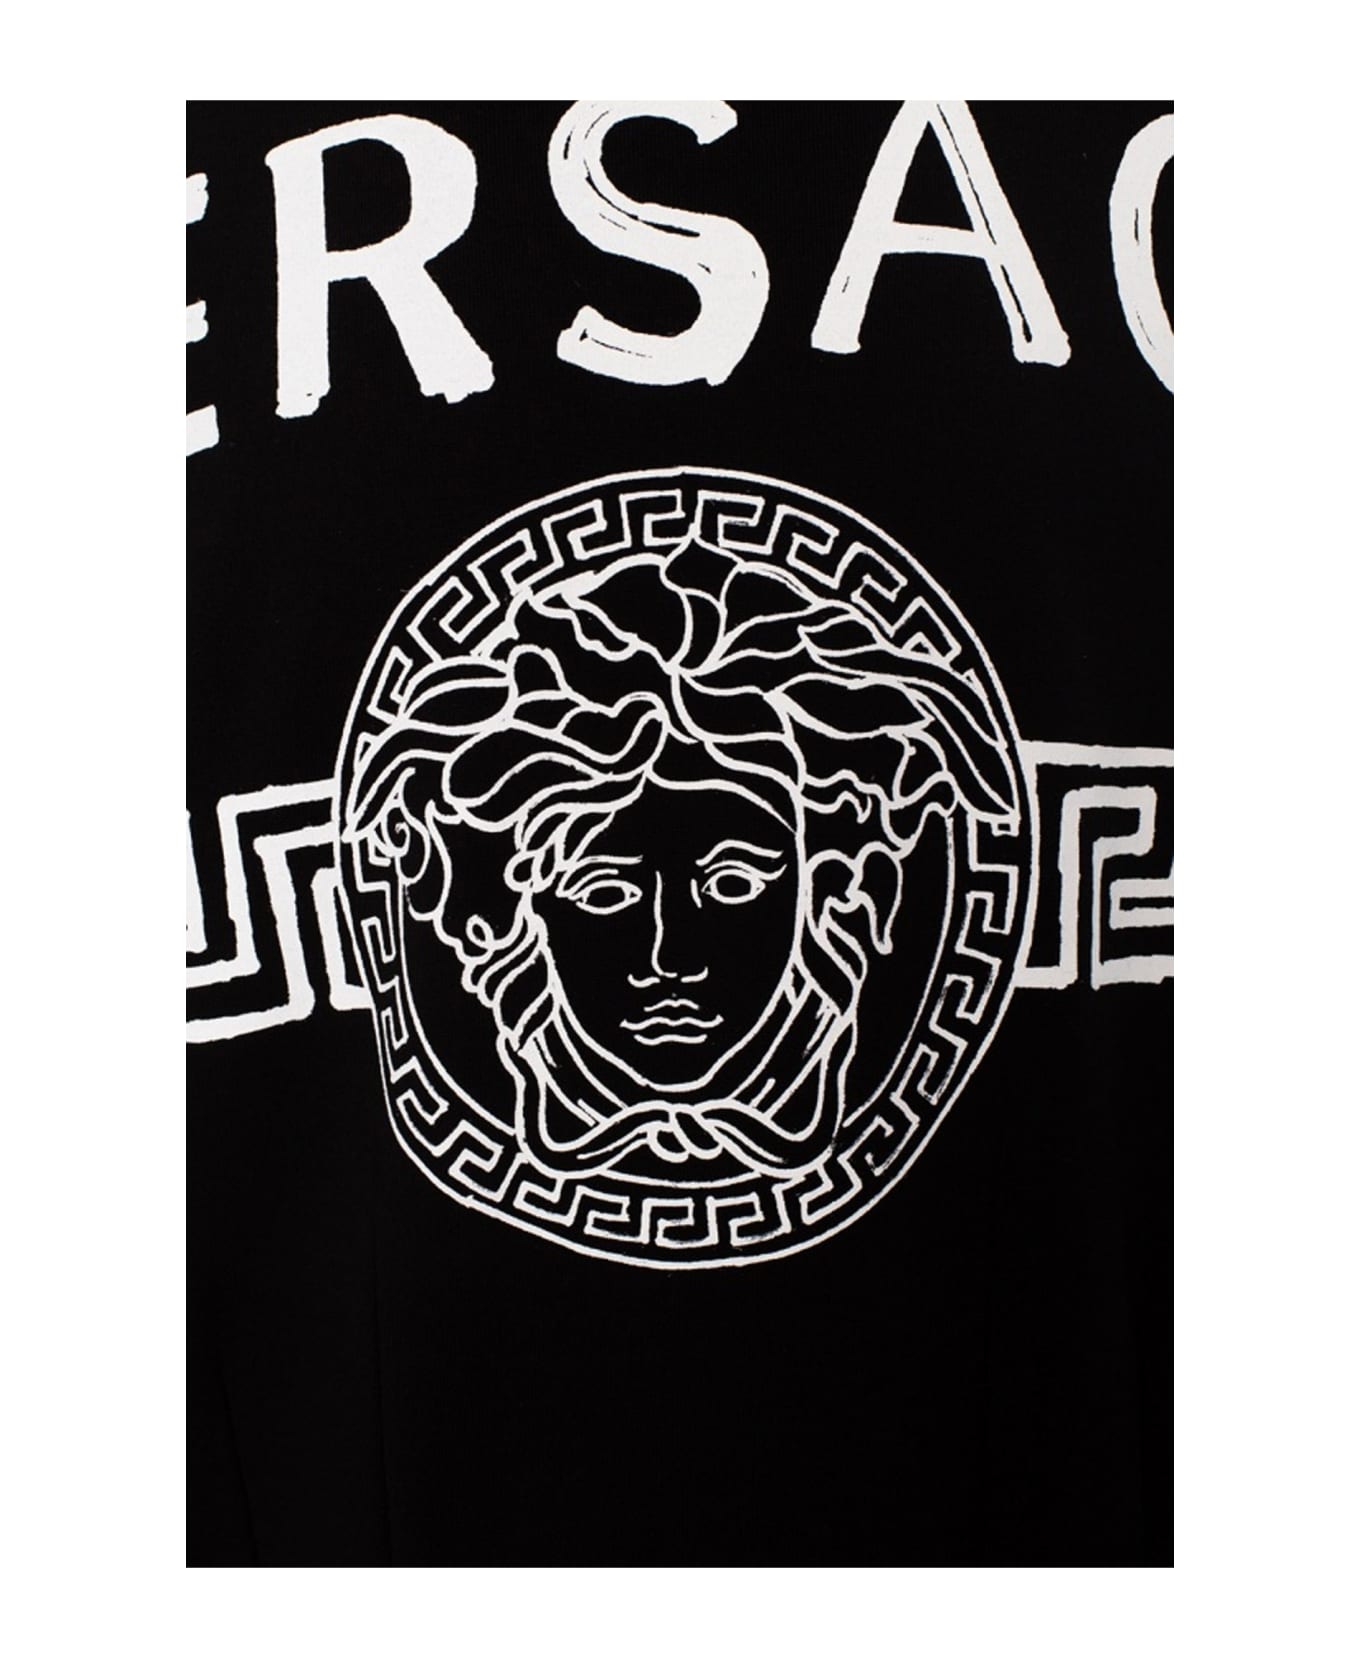 Versace Logo Sweartshirt - Black